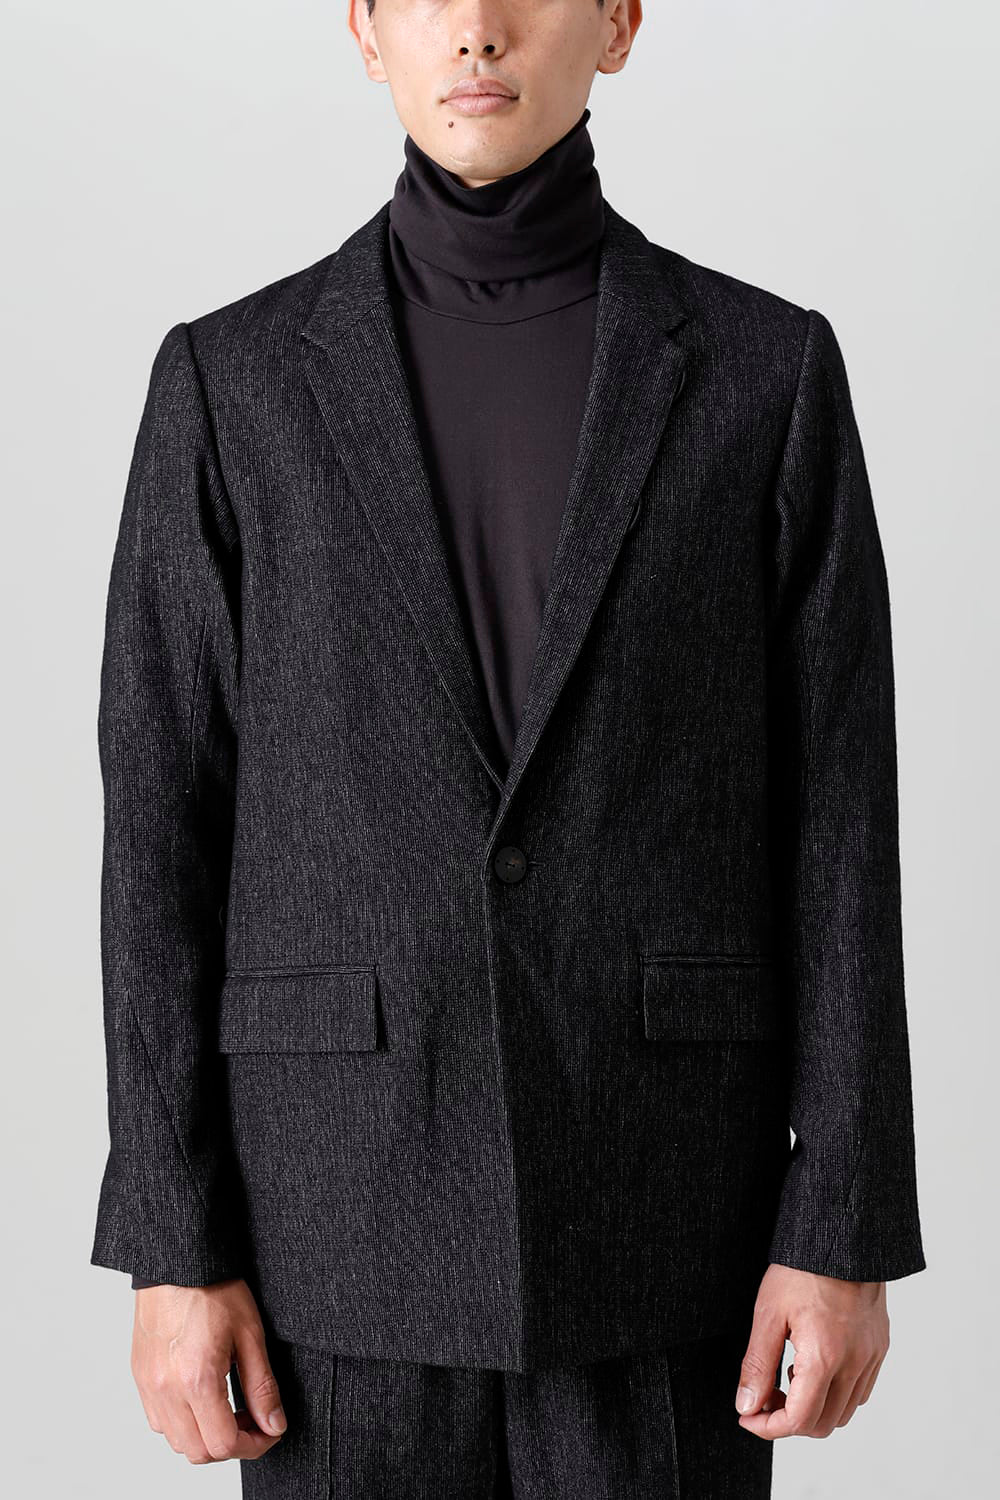 7,820円CROMAGNON Jacket Wool Super100 スーツ テーラード